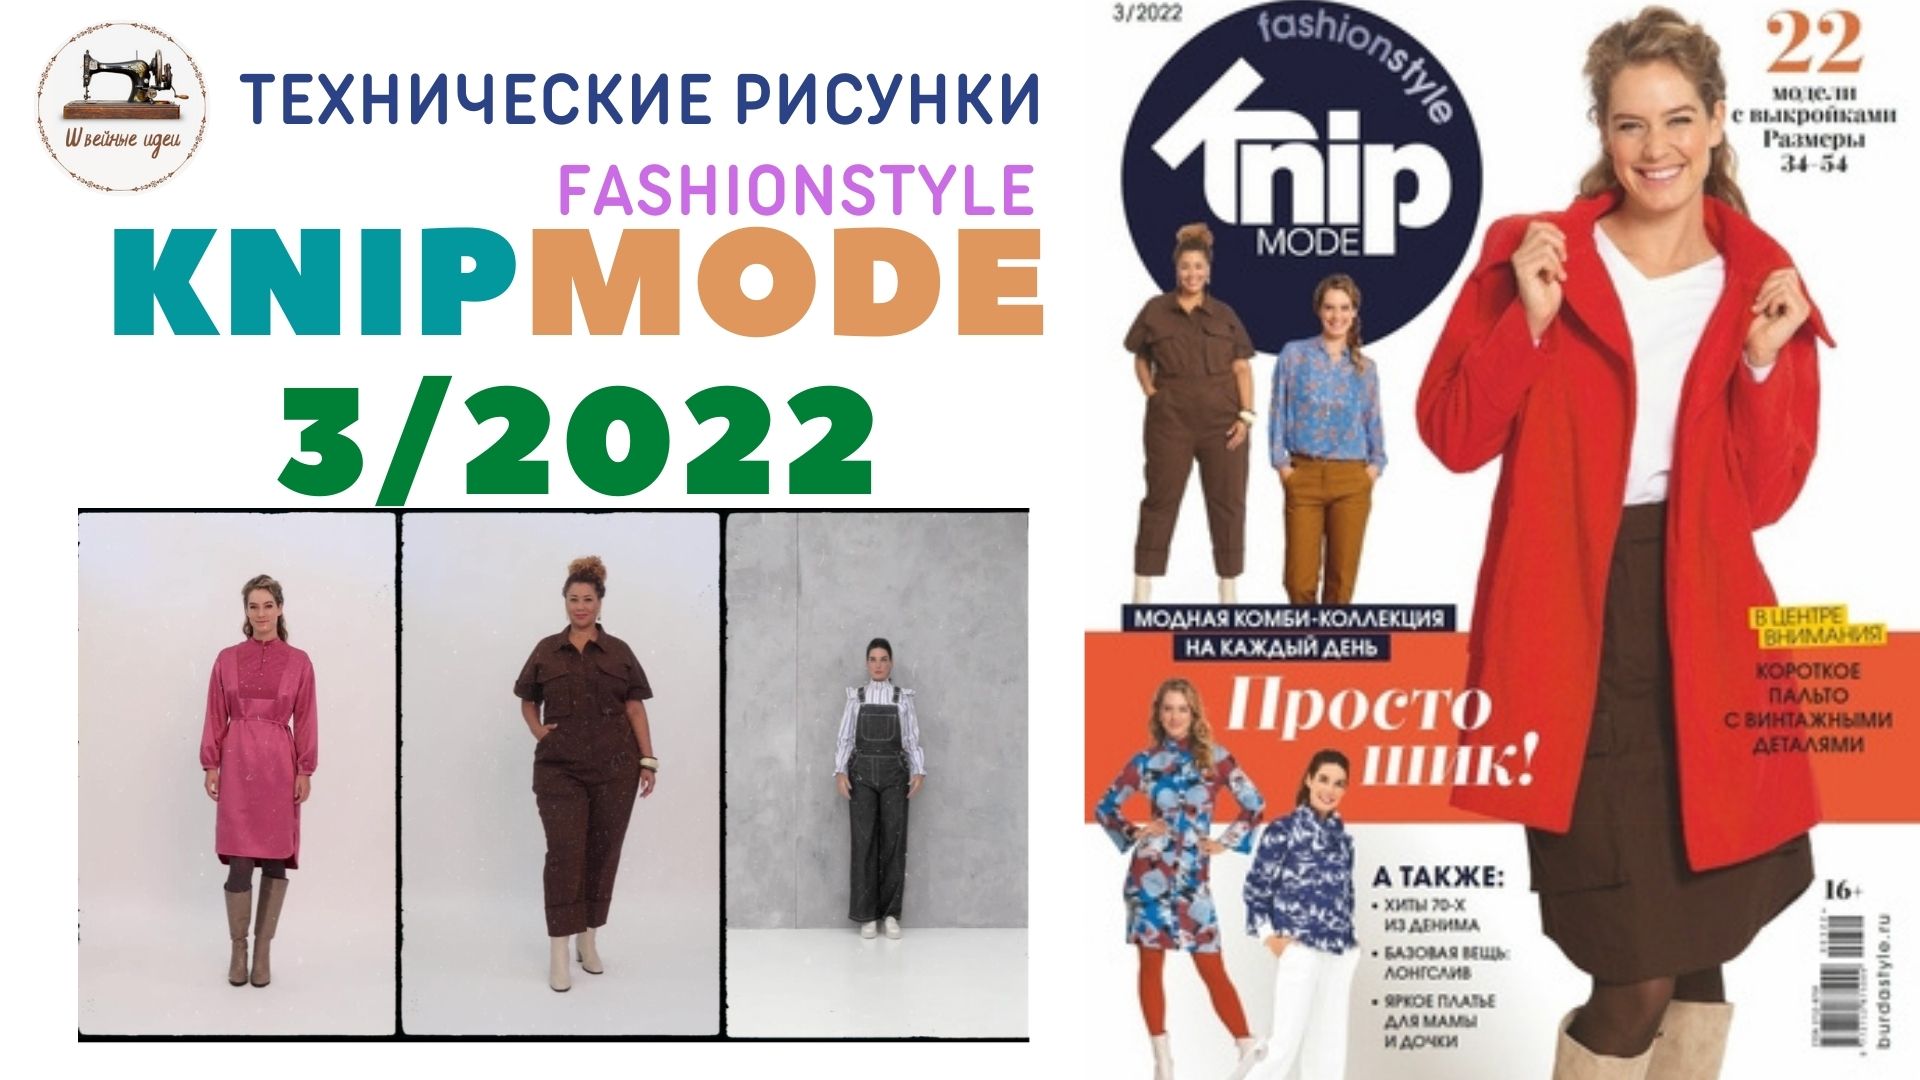 Knipmode Fashionstyle  3/2022 (Россия). Технические рисунки